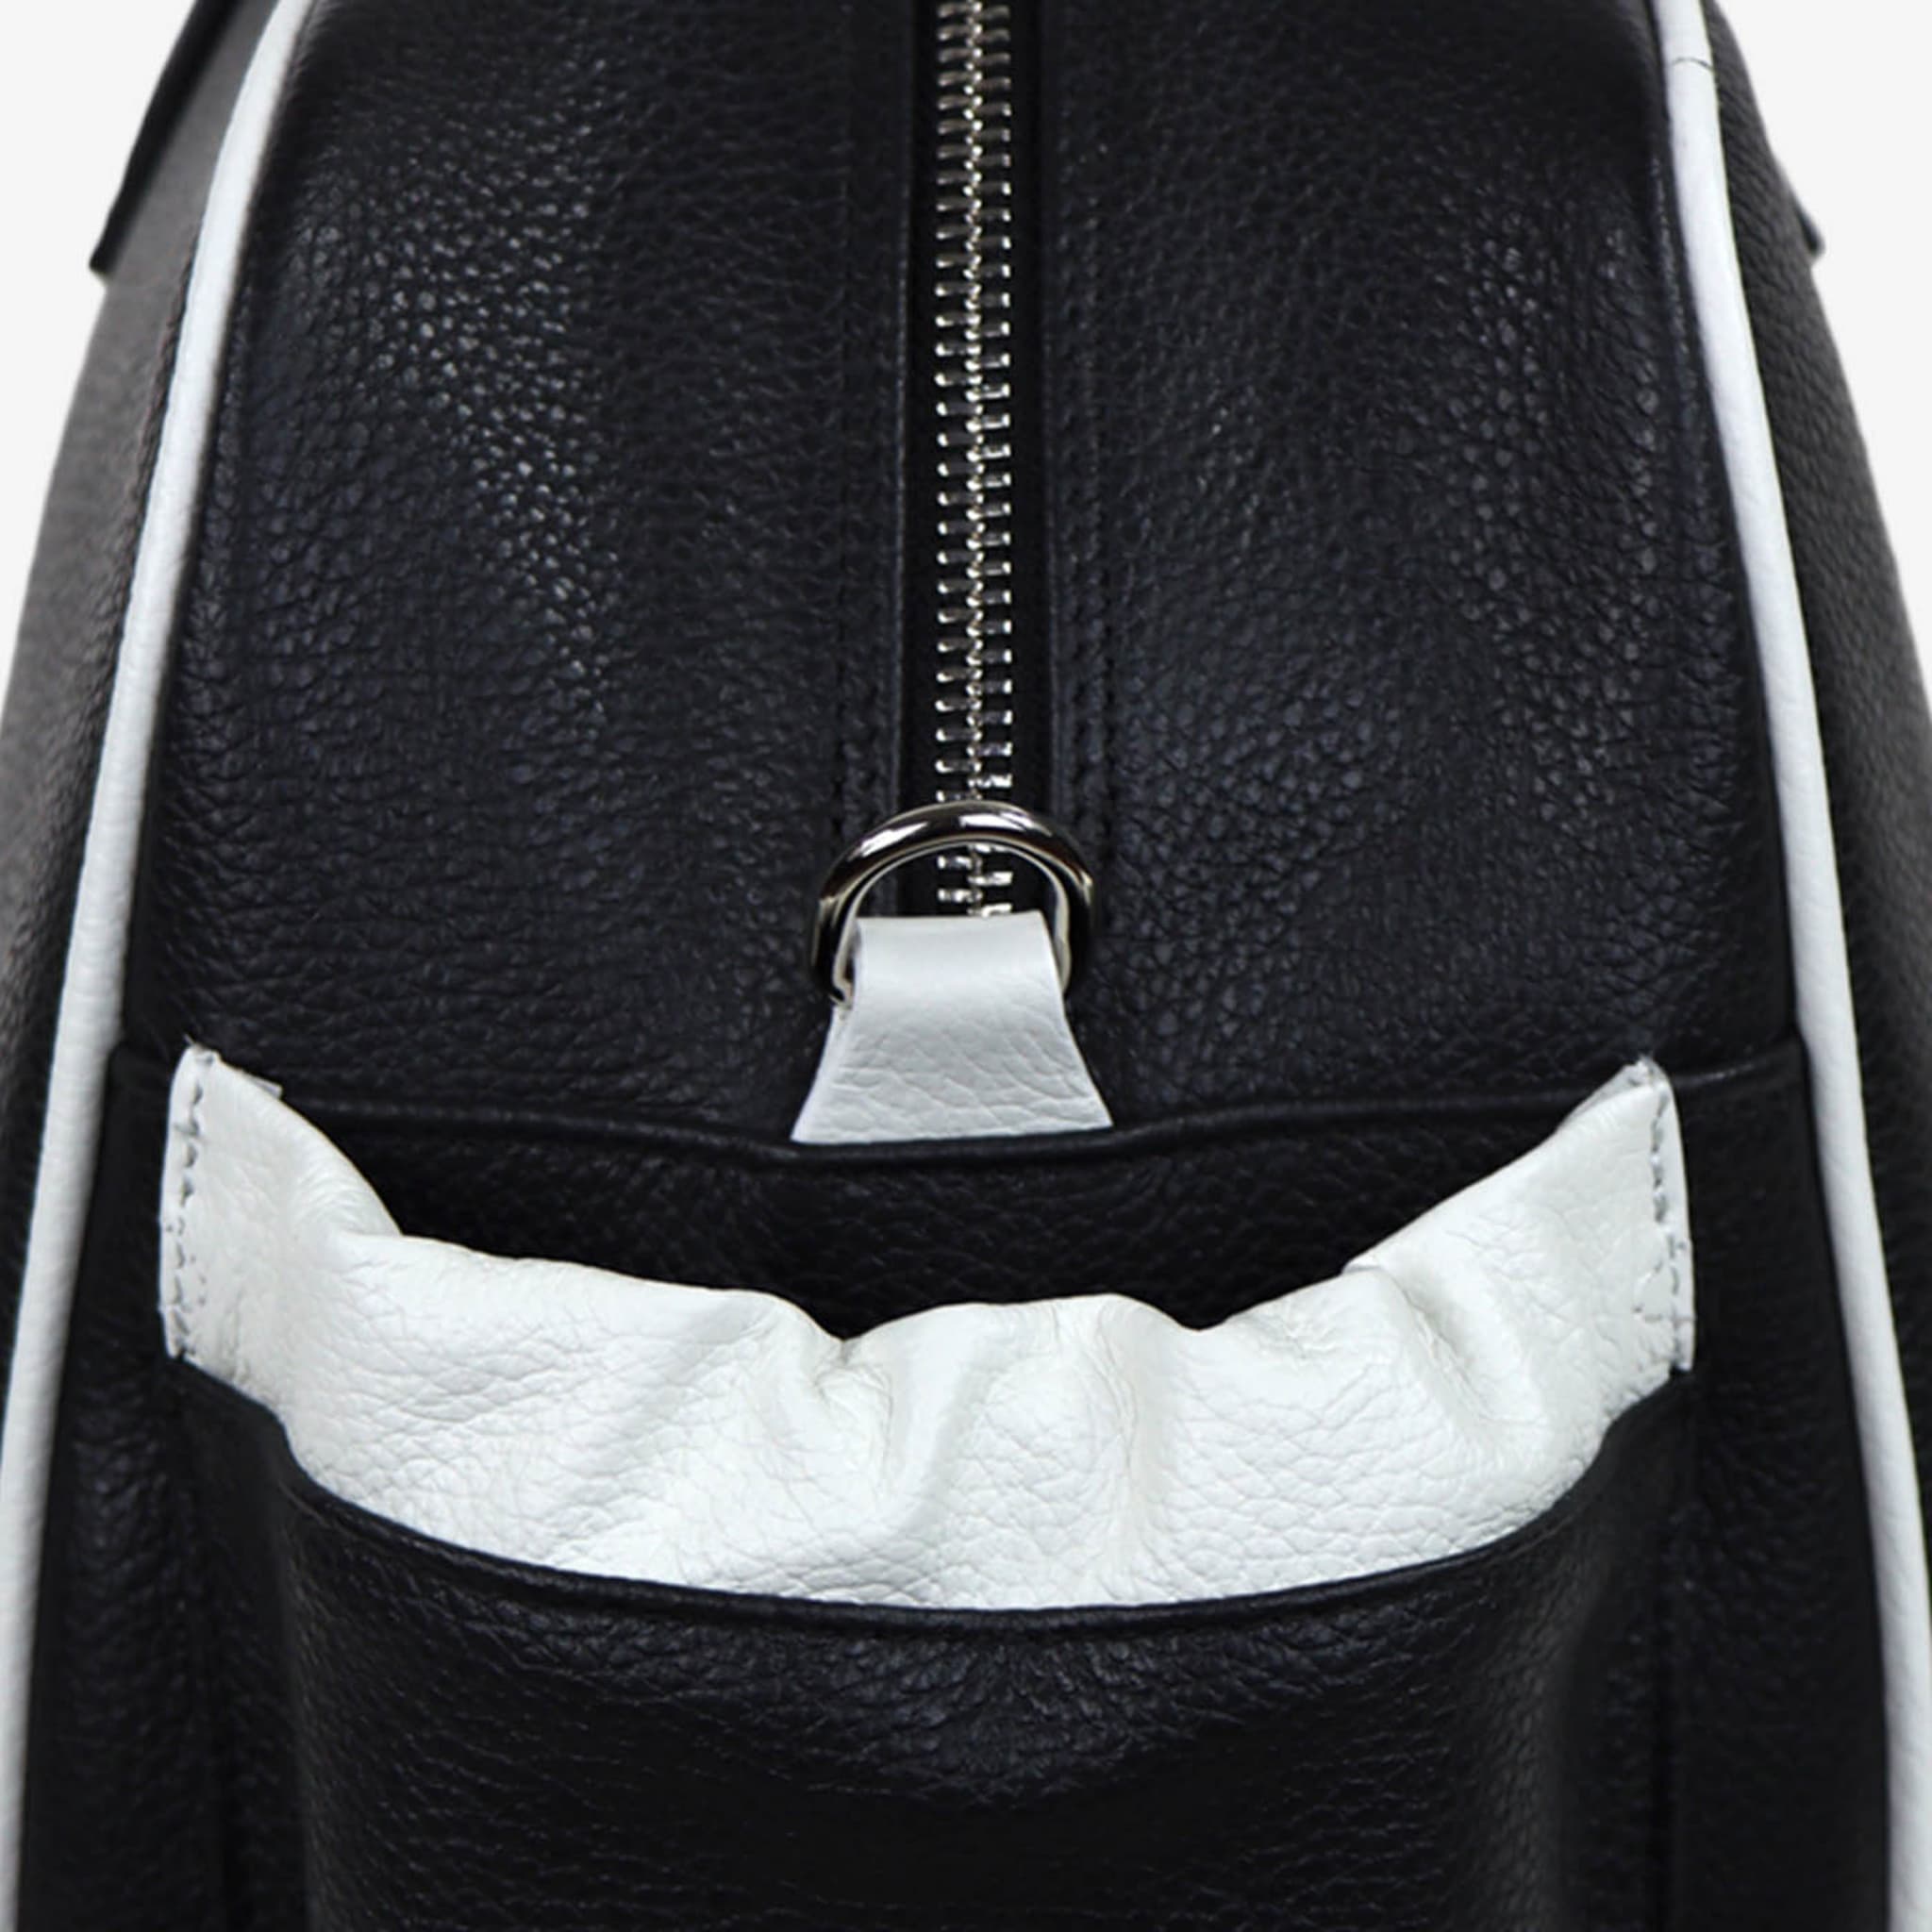 Bolsa de deporte negra y blanca con bolsillo en forma de raqueta de tenis - Vista alternativa 1